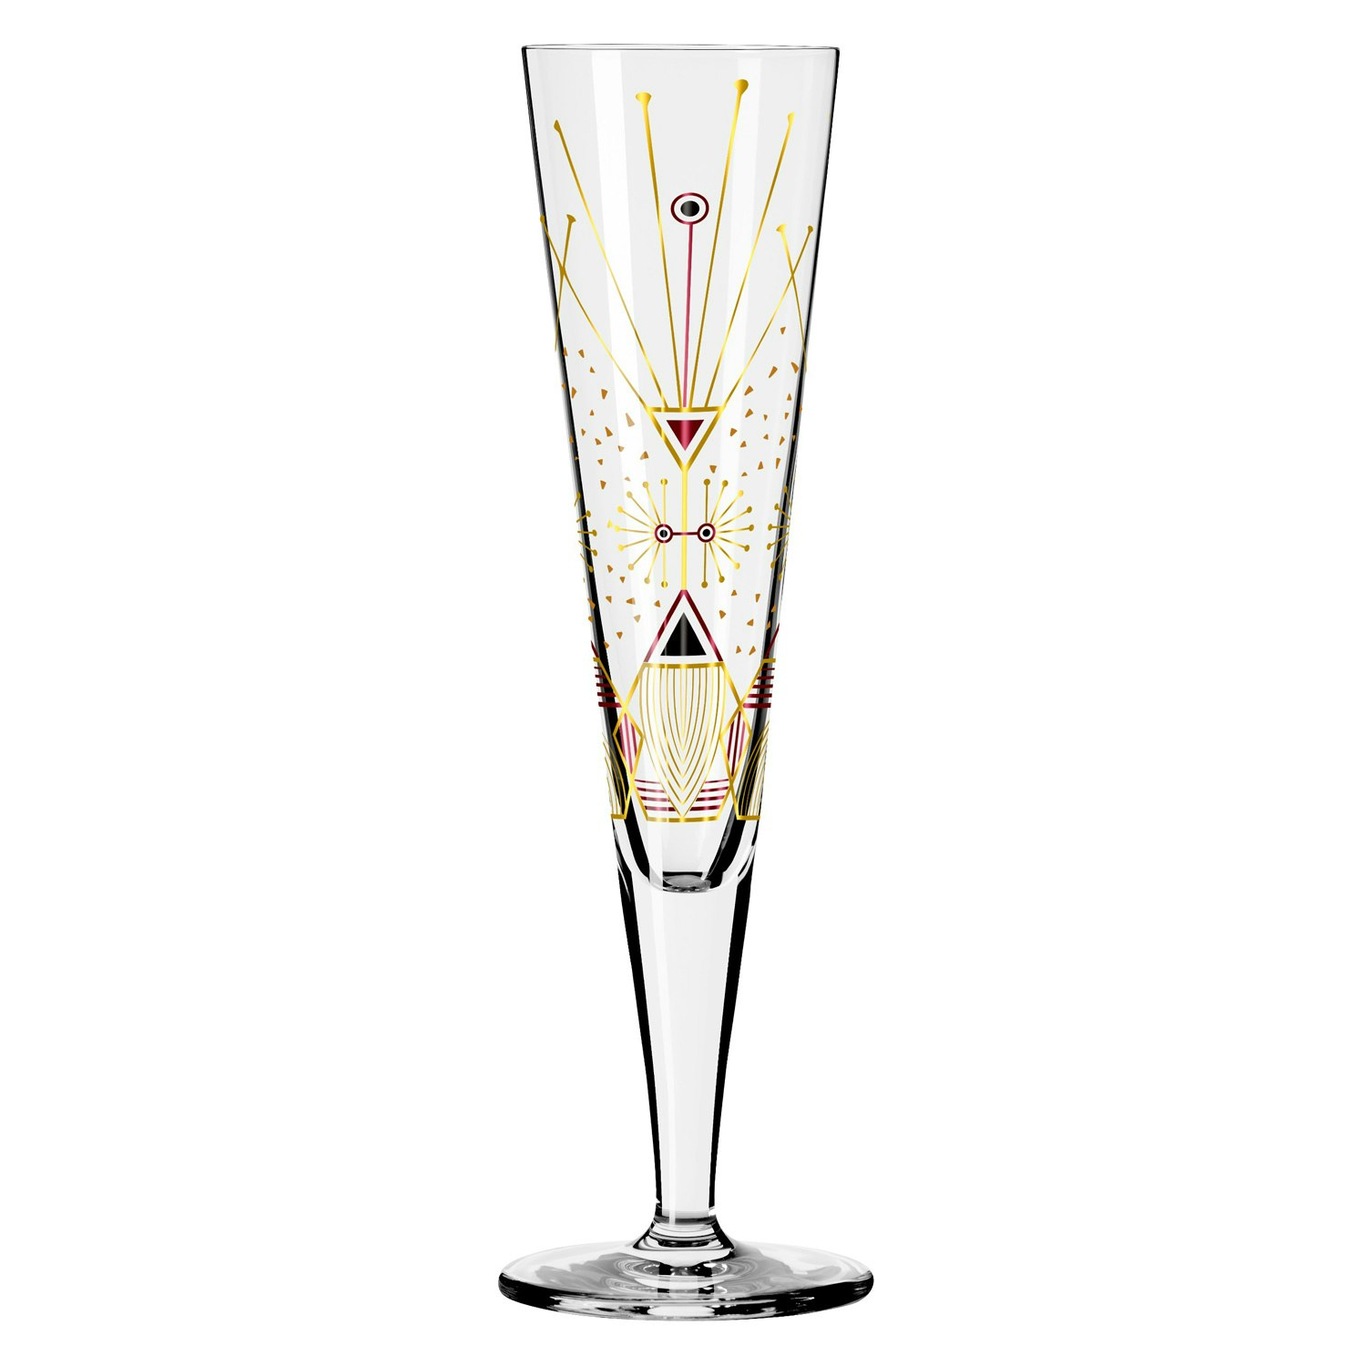 Goldnacht Champagne Glass, NO: 25 - Ritzenhoff @ RoyalDesign